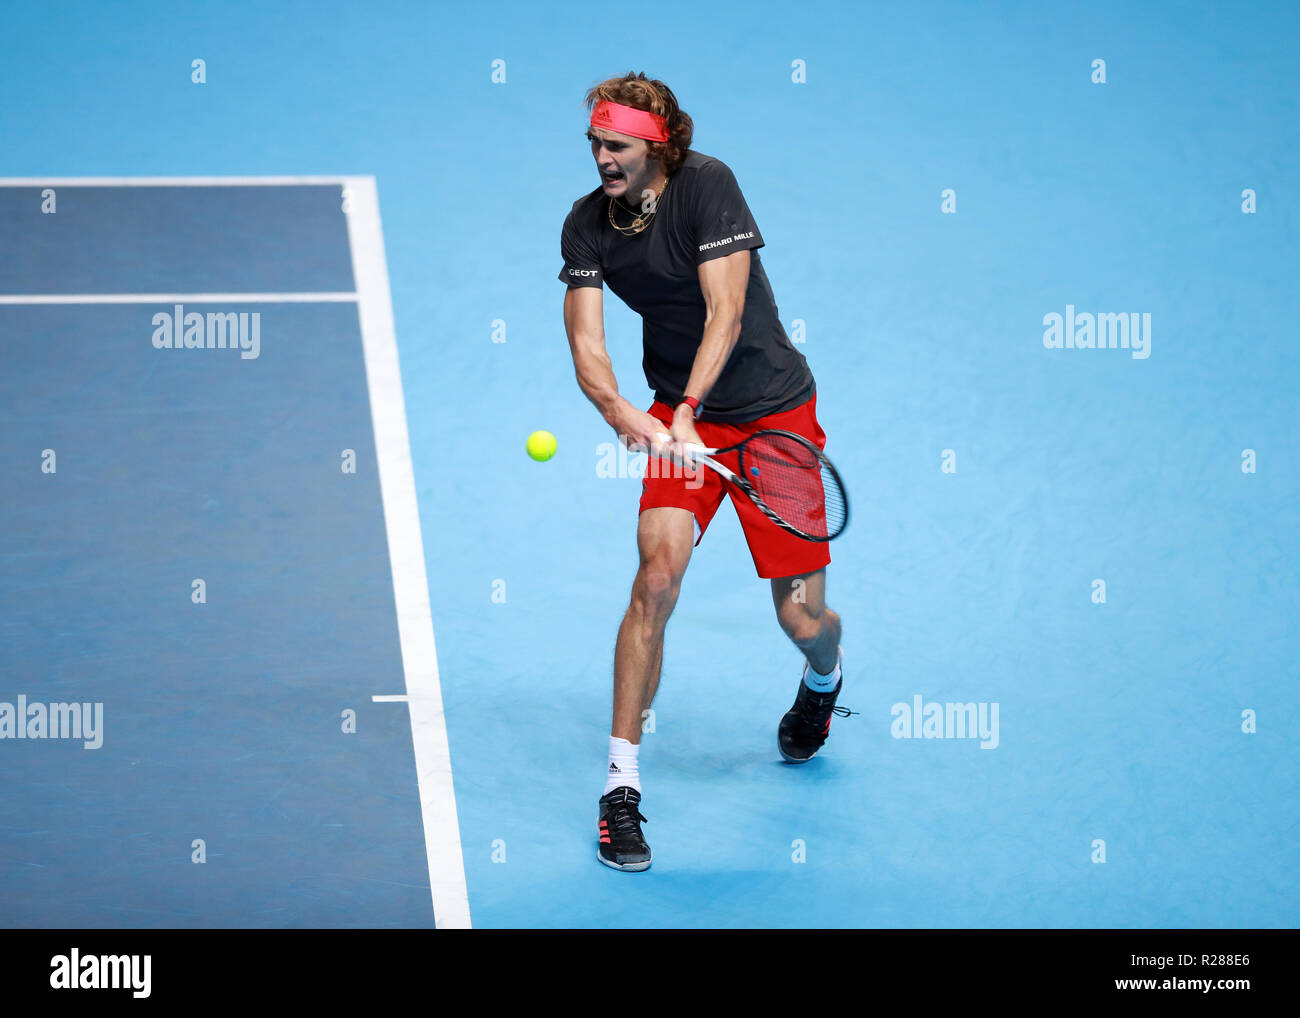 17 novembre 2018, O2 Arena, London, England ; Nitto ATP Tennis finale ; Alexander Zverev (GER) avec un tir du revers dans son match contre Roger Federer (SUI) Banque D'Images